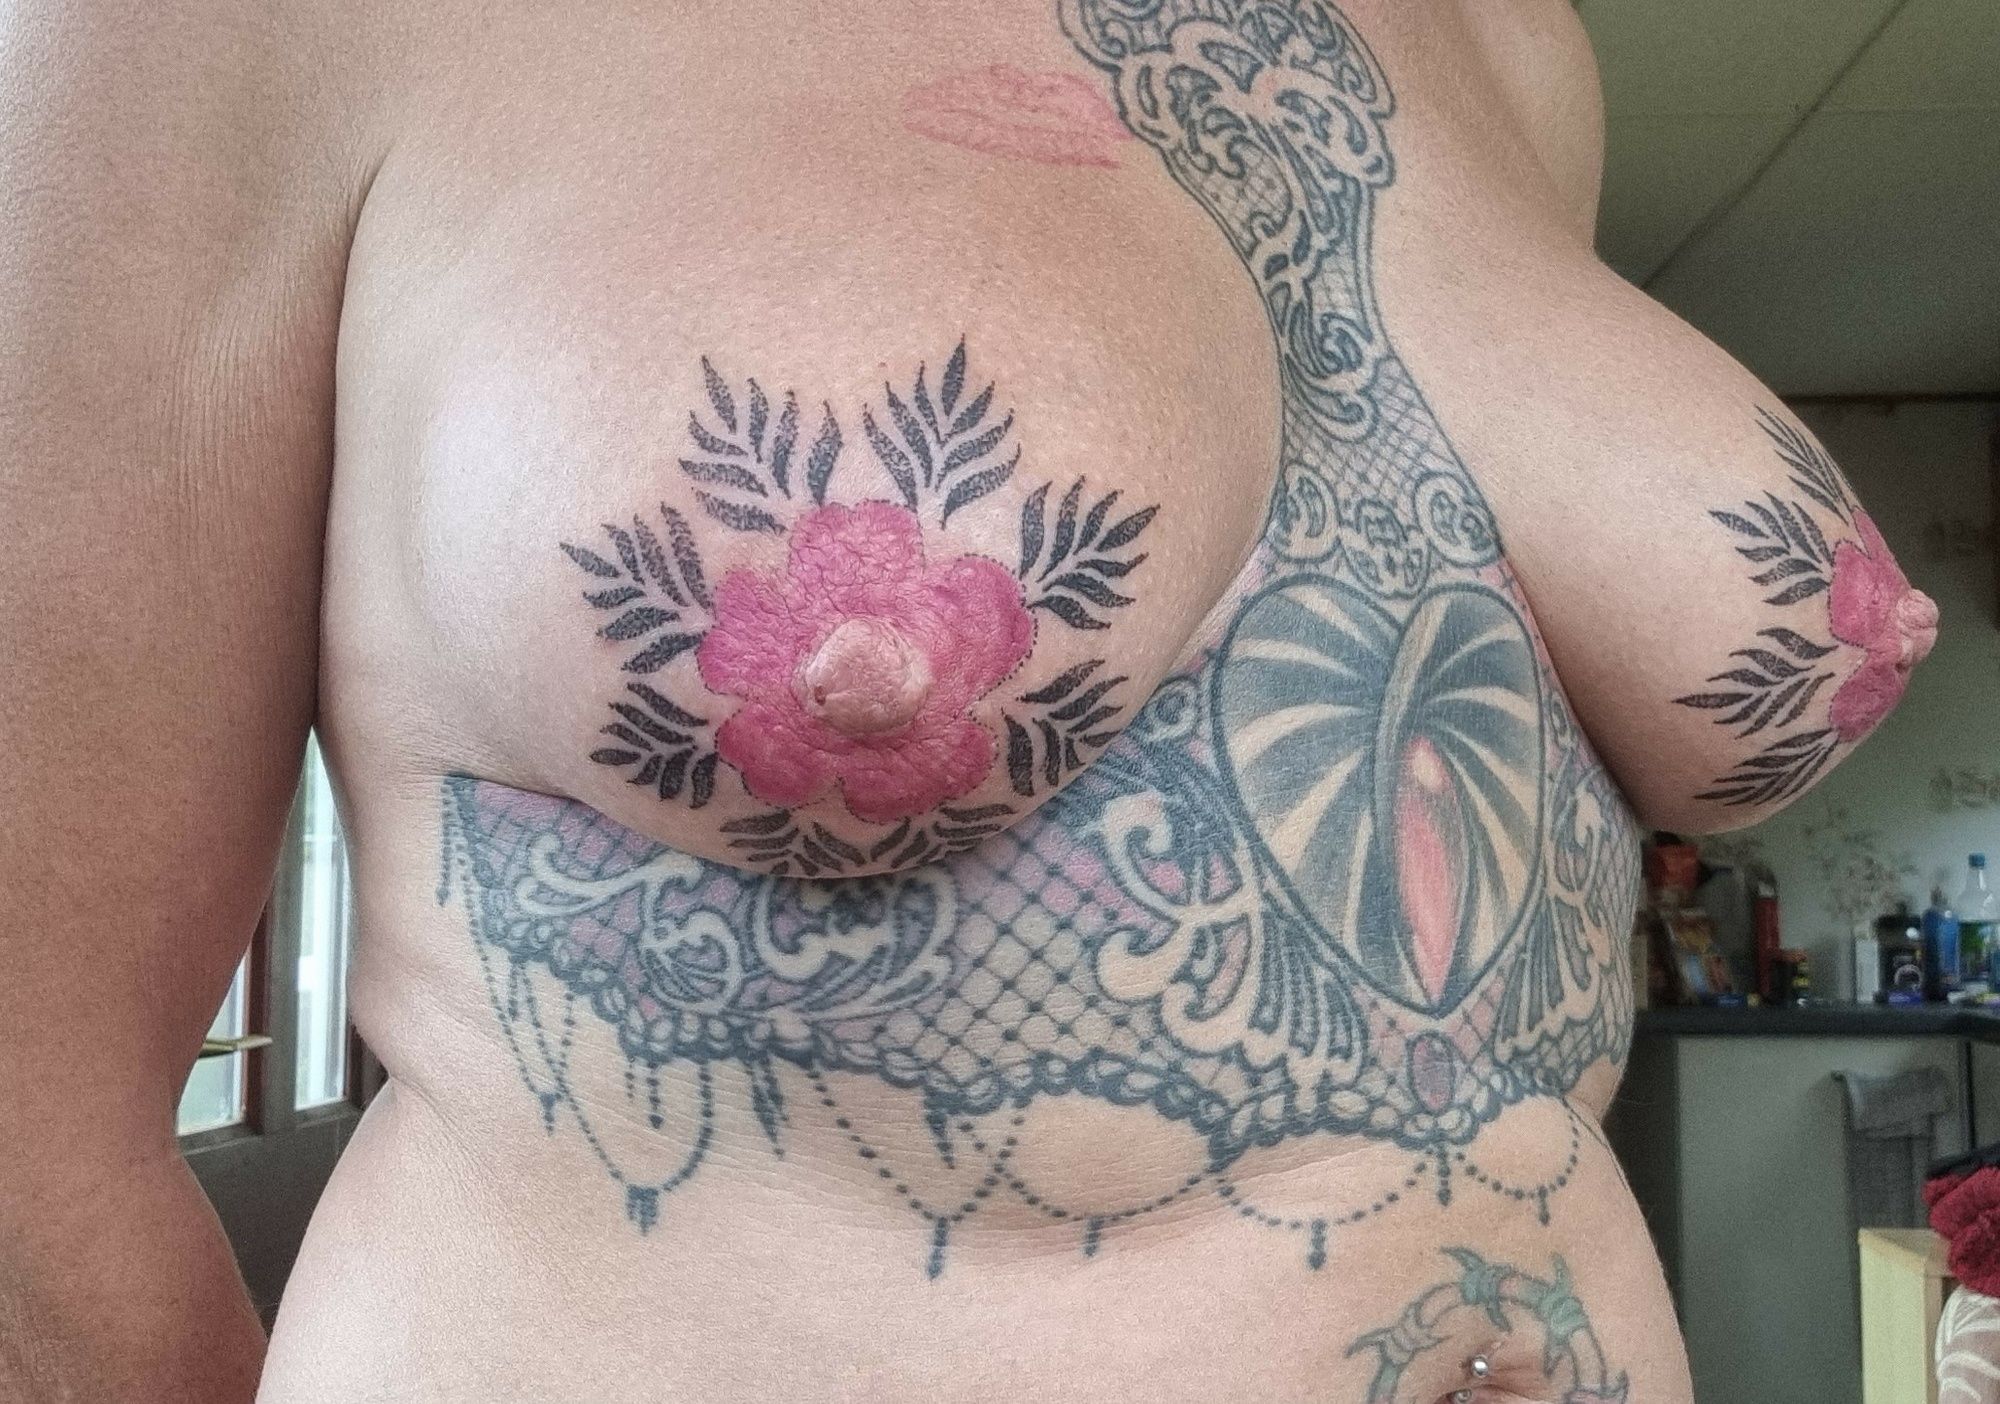 New titty tatts